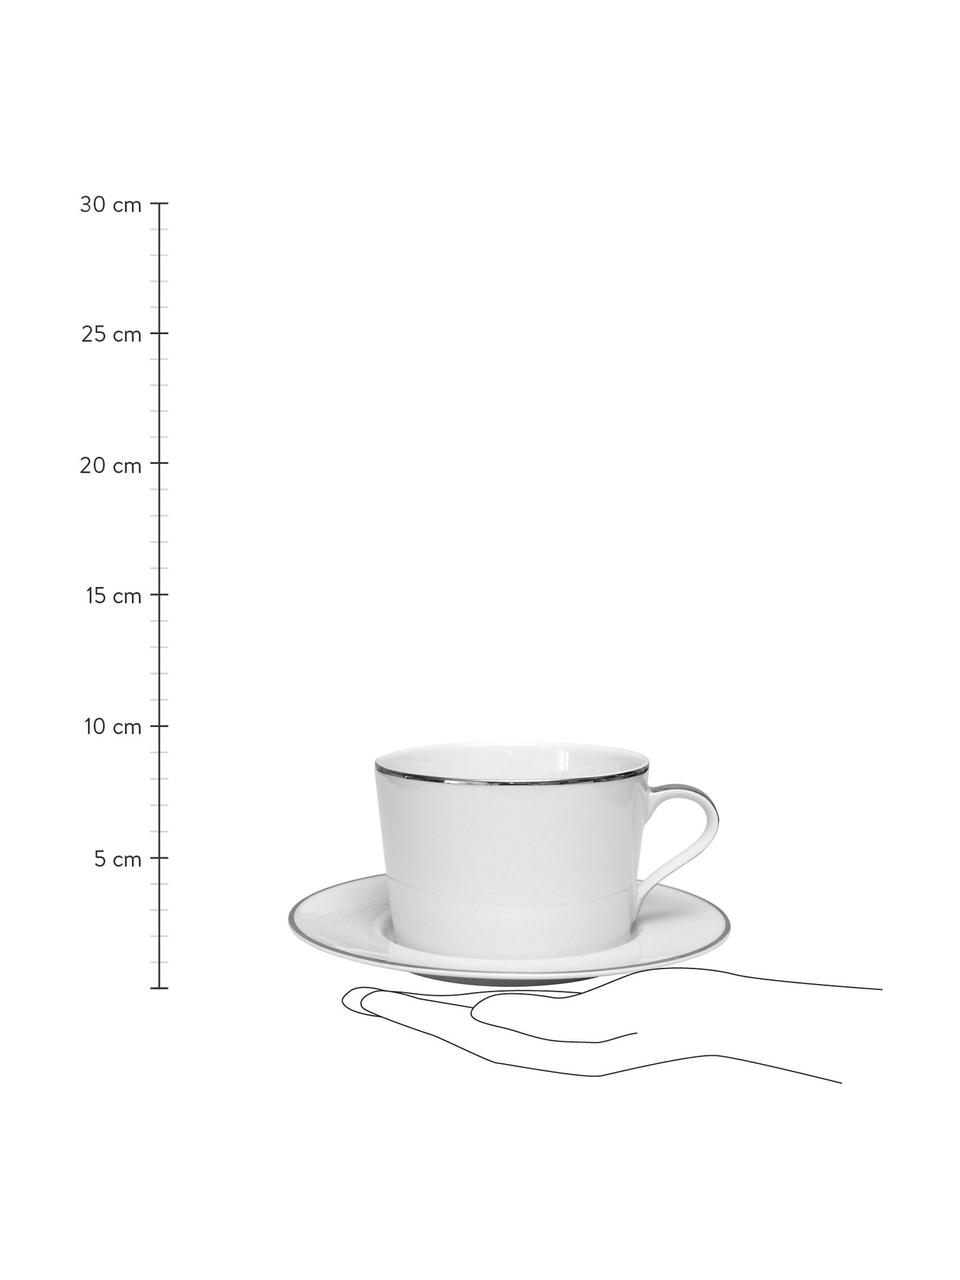 Tazzina caffè in porcellana con piattino e bordi argentati Ginger 2 pz, Porcellana, Bianco, argentato, Ø 17 x Alt. 8 cm